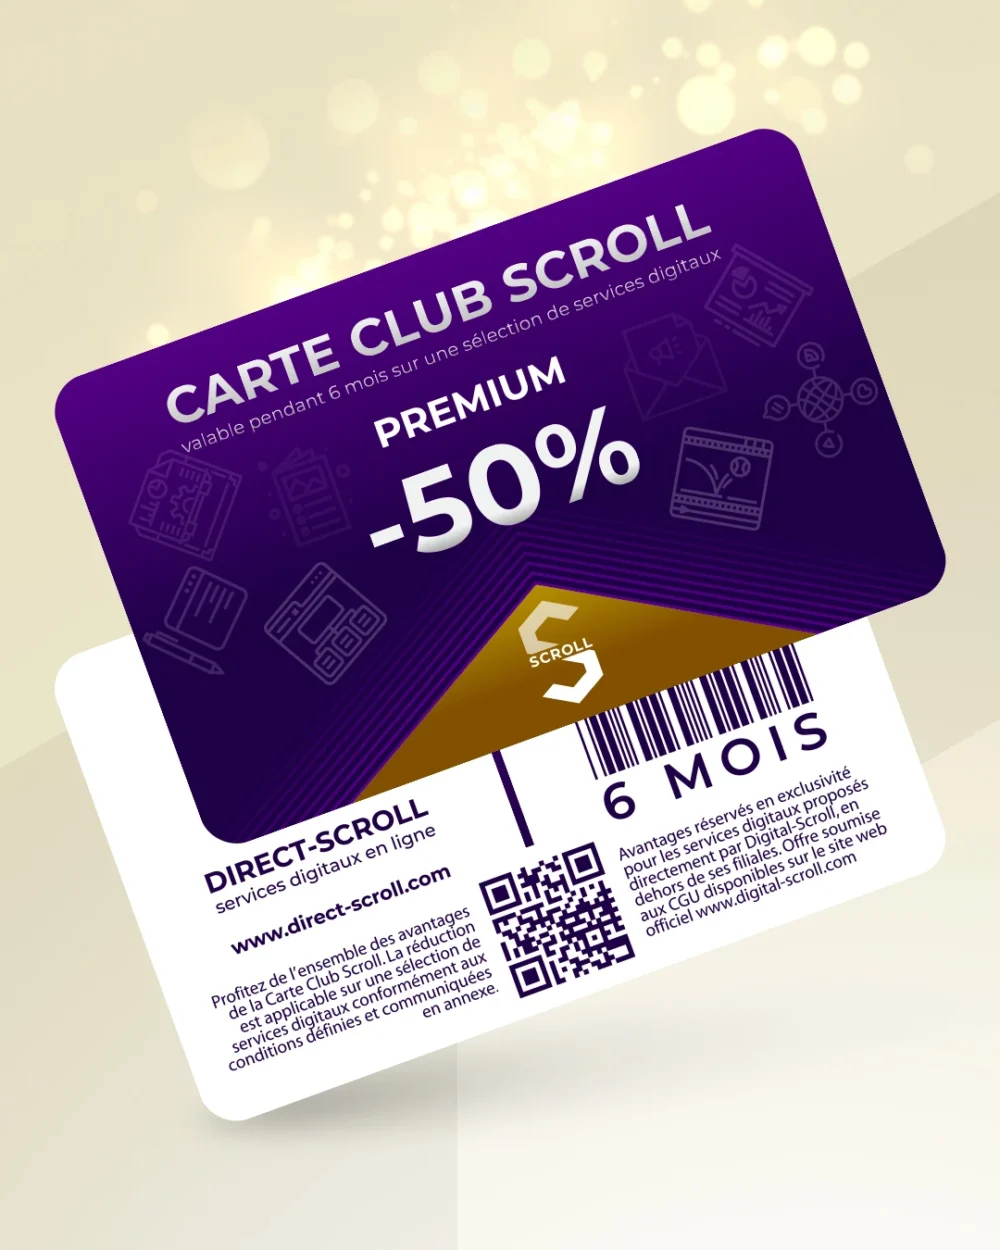 Direct-Scroll | e-Carte Club Premium -50% de Réduction sur toute la Boutique | e-Cartes Club | Slide 1 | Pack Digital Offert avec un Abonnement de 6 Mois à Notre e-Boutique de Templates pour Visuels Réseaux Sociaux